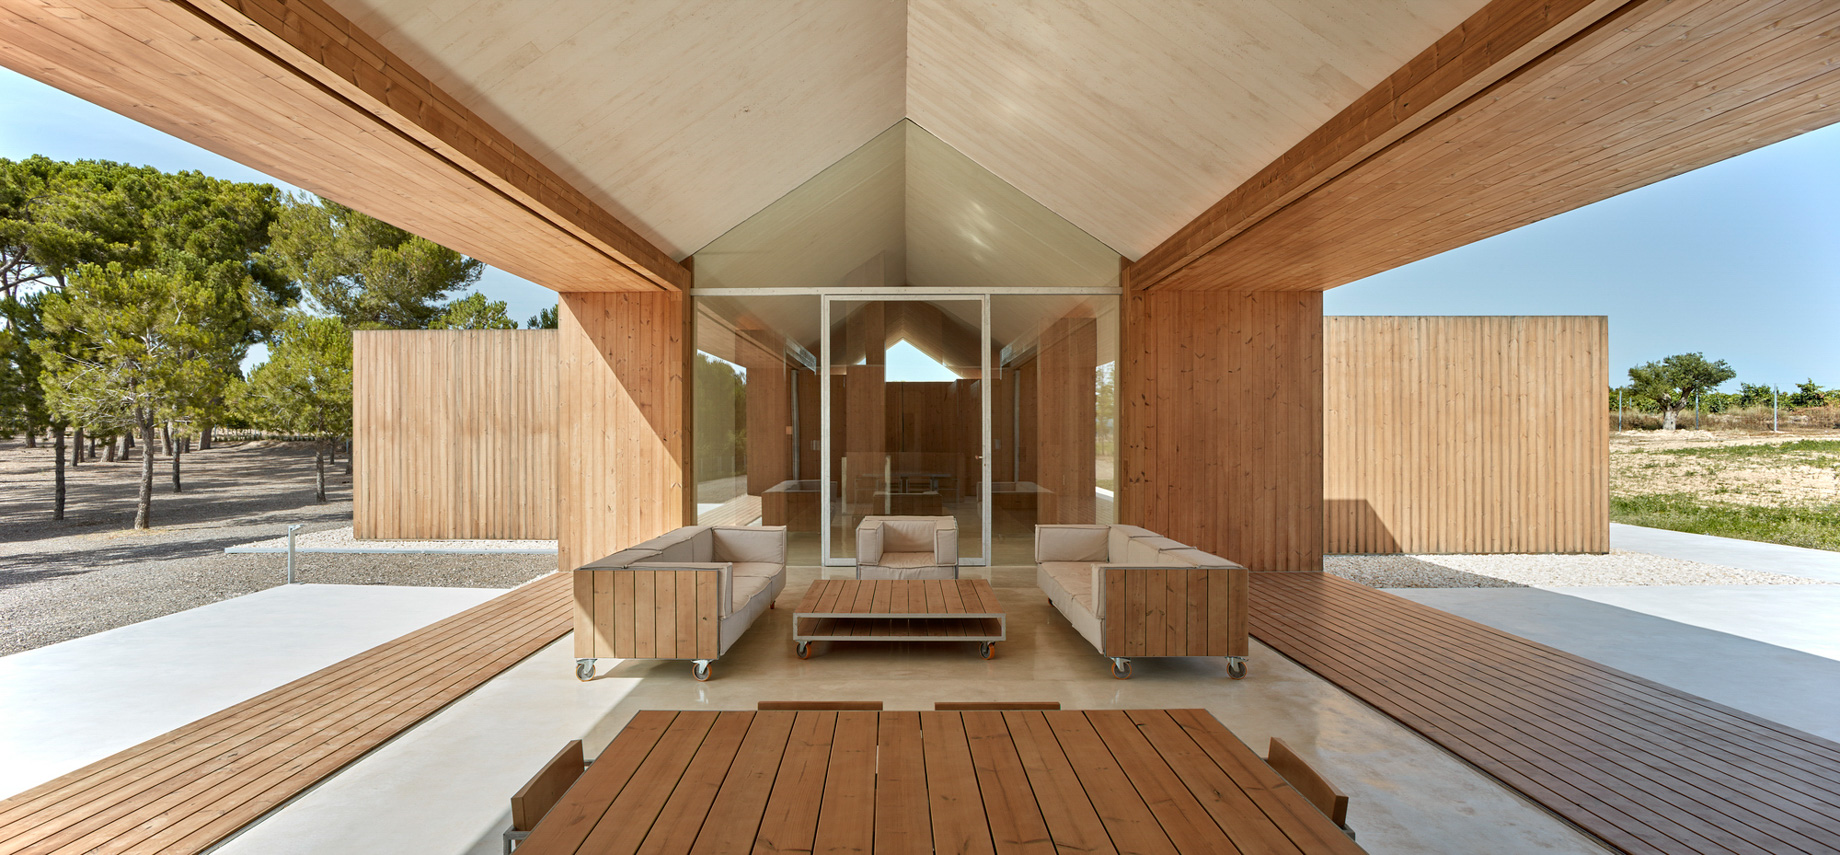 Modern Luxury Retreat Cottage in the Vineyard – Fontanars dels Alforins, Spain – 10